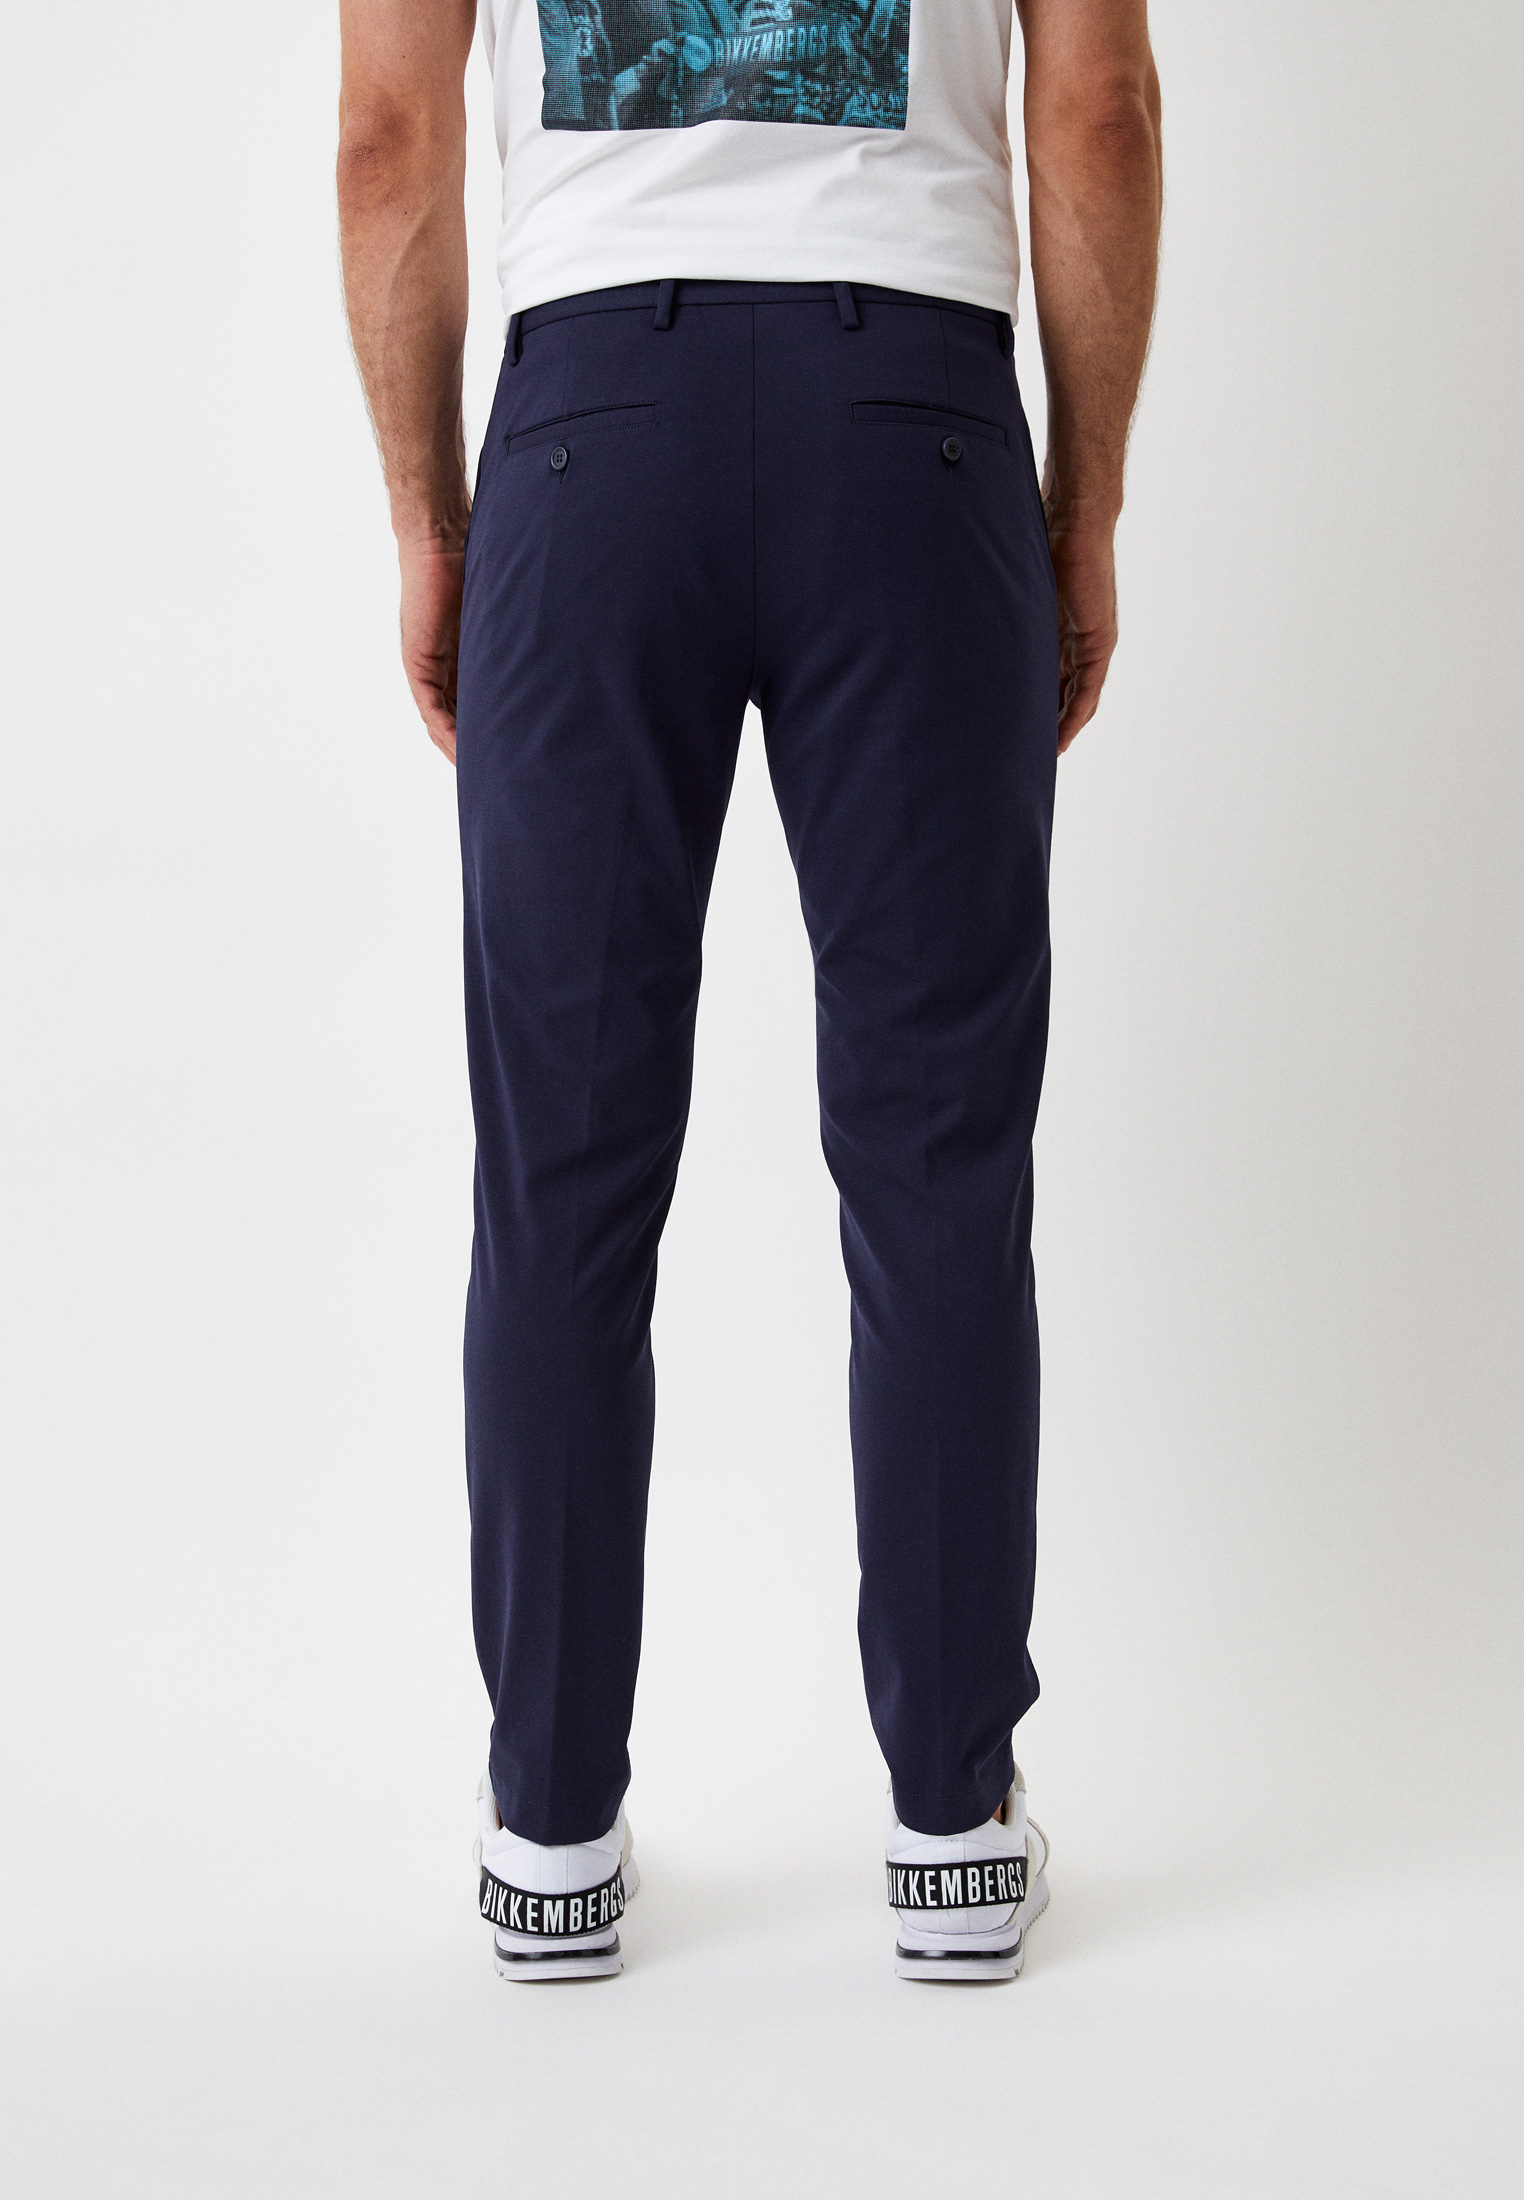 Мужские классические брюки Bikkembergs (Биккембергс) C 1 150 00 E 2031: изображение 3